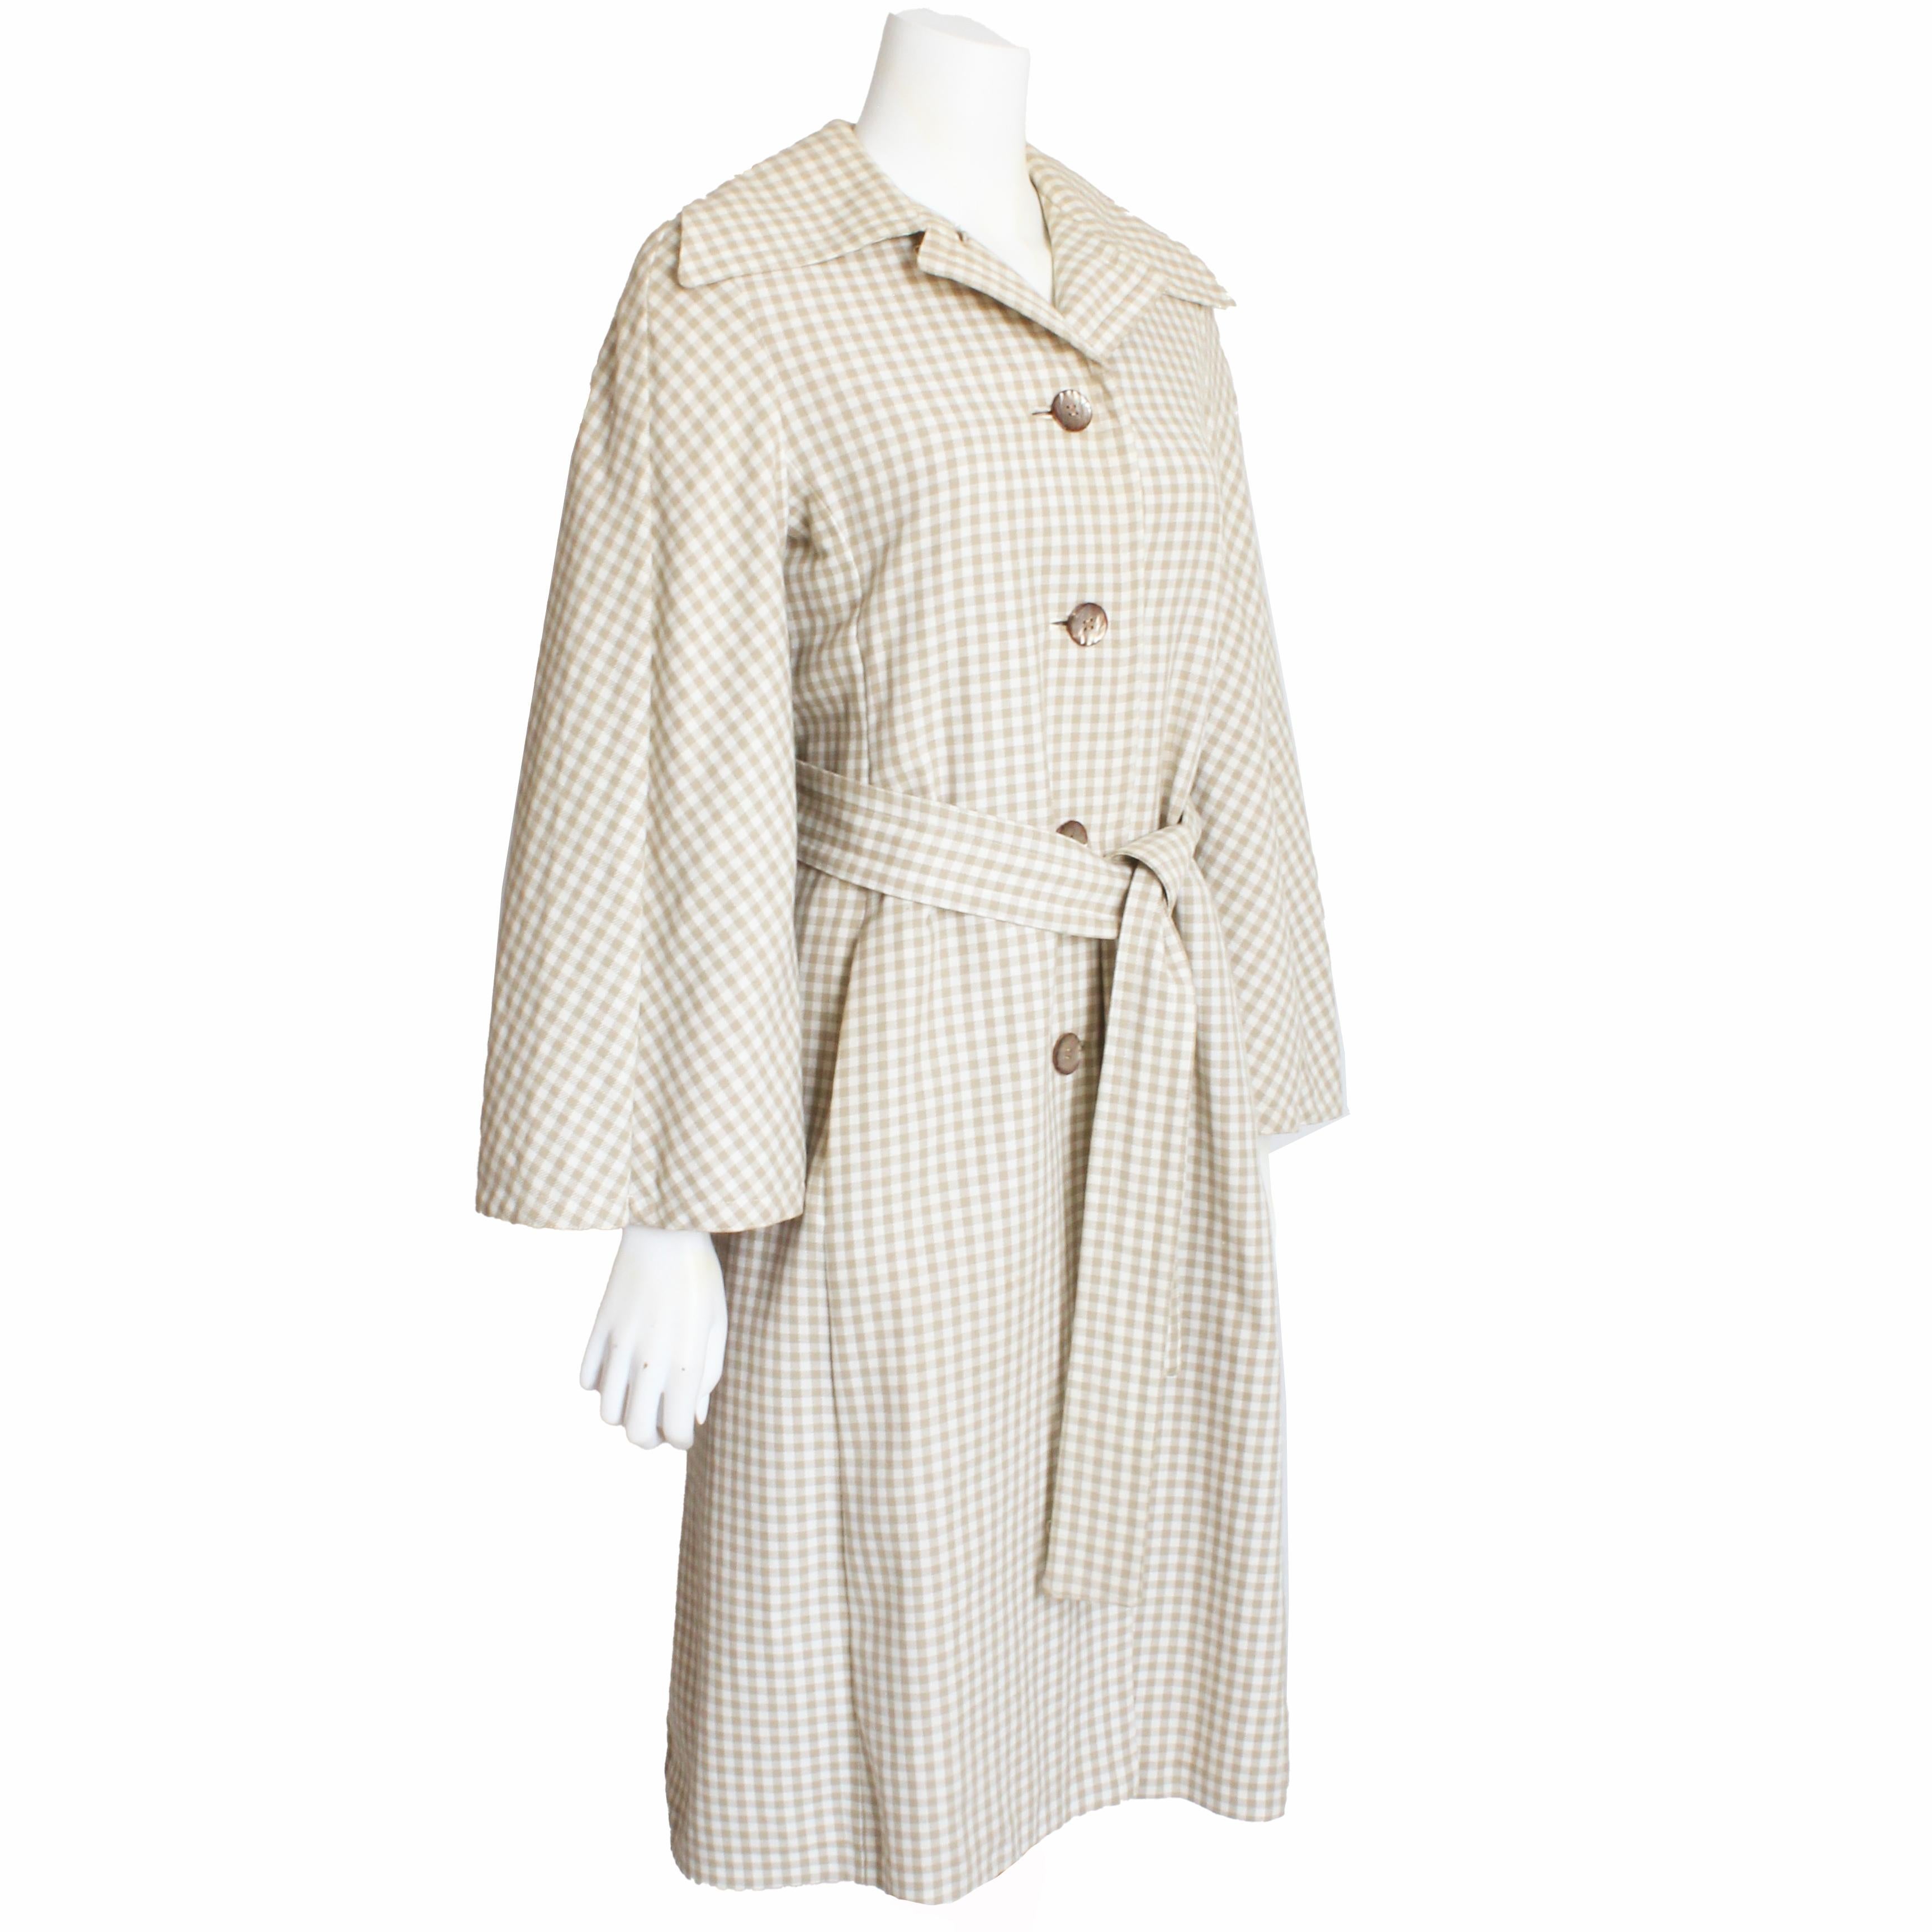 Authentischer, gebrauchter Mantel oder Jacke im Trenchcoat-Stil von Donald Brooks mit angesetztem Umhang, circa in den 70er Jahren. Er ist aus leichtem hellbraun-weiß-kariertem Webstoff gefertigt, wird mit Knöpfen geschlossen und mit einem